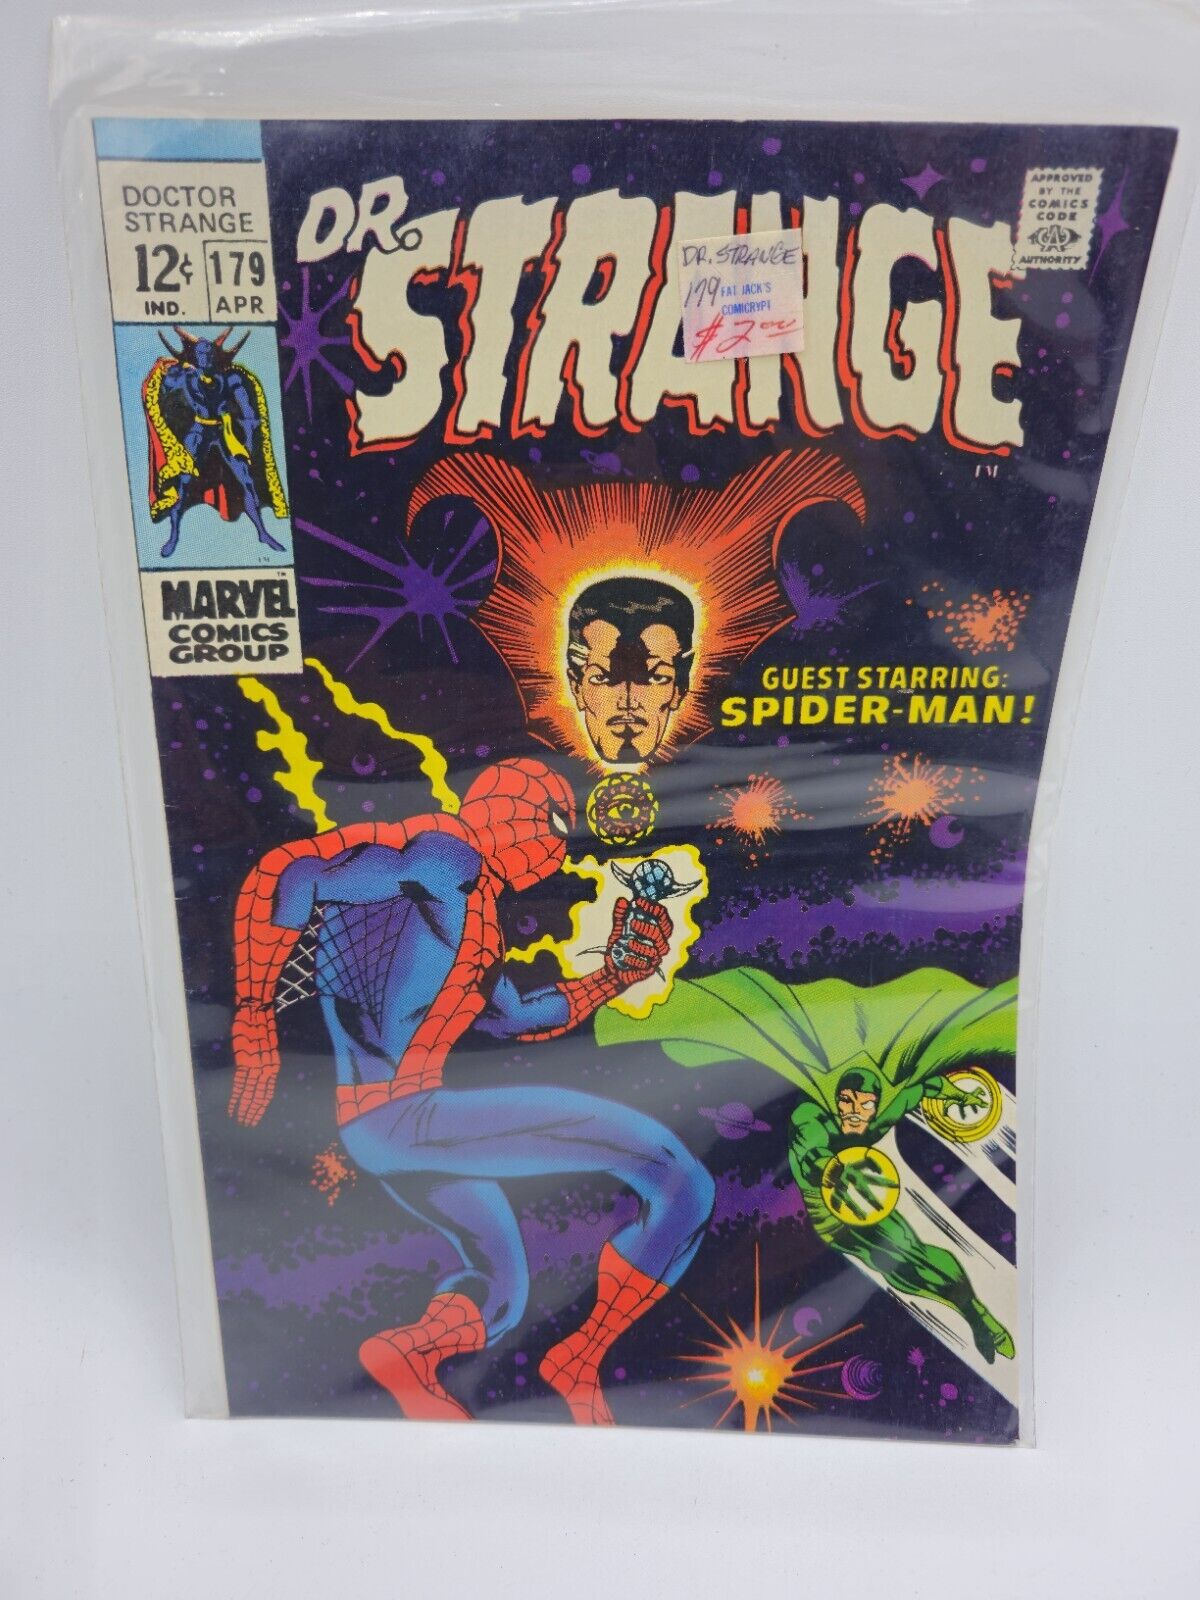 MARVEL - DR. STRANGE #179 (1969) - DOCTOR STRANGE - Guest Starring SPIDER-MAN